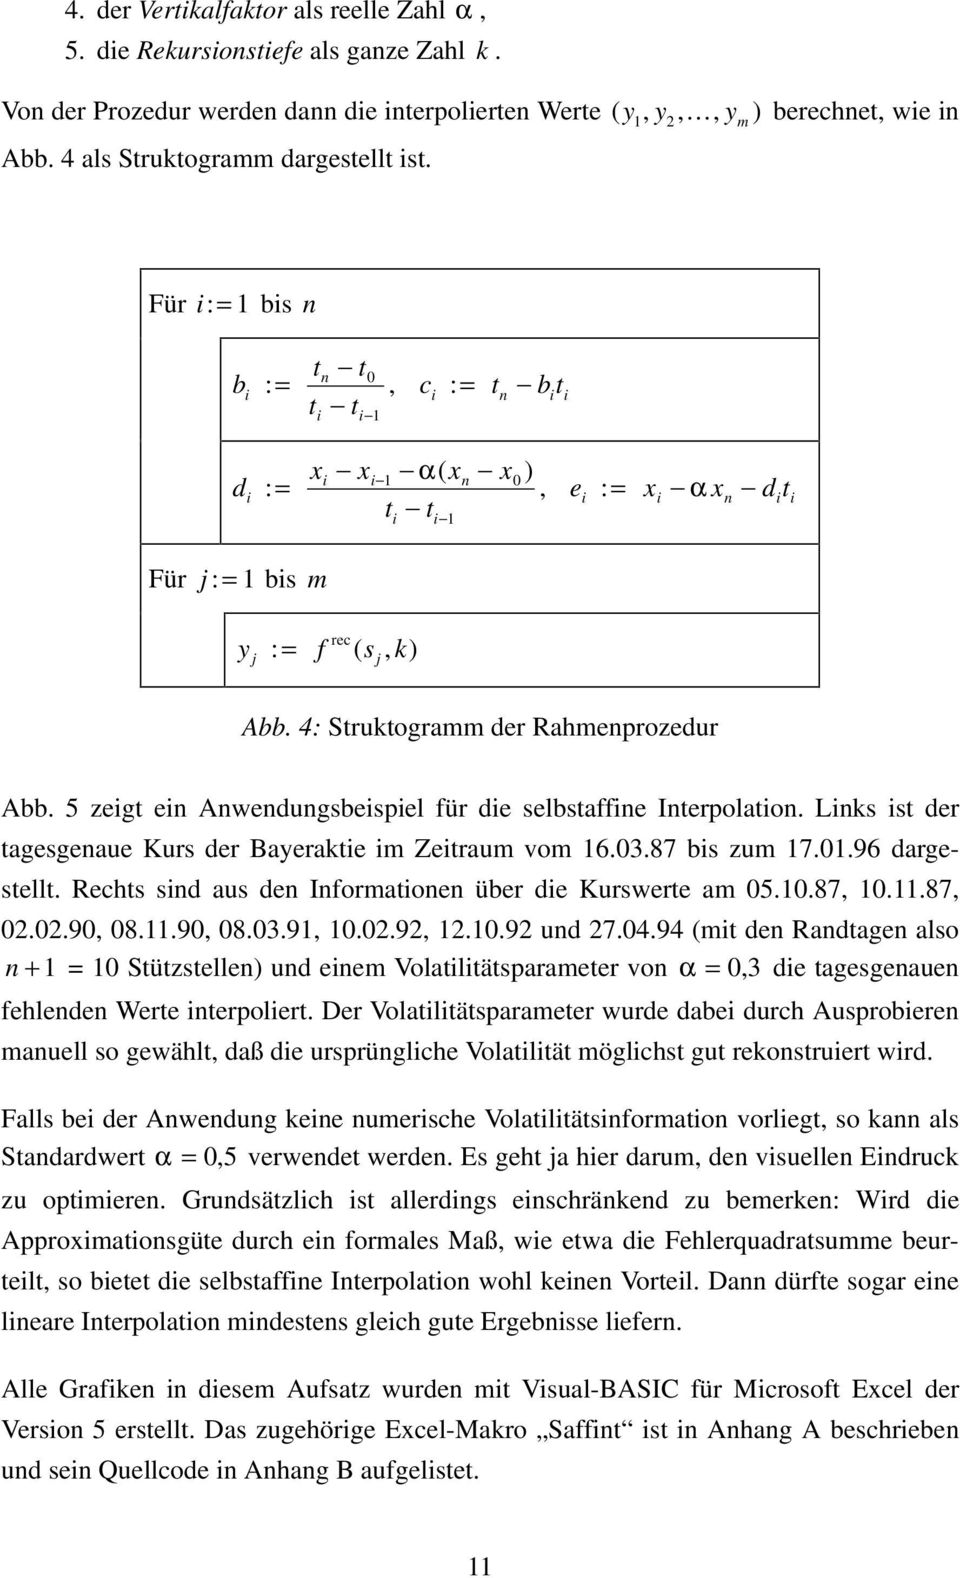 4: Struktogramm der Rahmenprozedur Abb. 5 zegt en Anwendungsbespel für de selbstaffne Interpolaton. Lnks st der tagesgenaue Kurs der Bayerakte m Zetraum vom 16.03.87 bs zum 17.01.96 dargestellt.